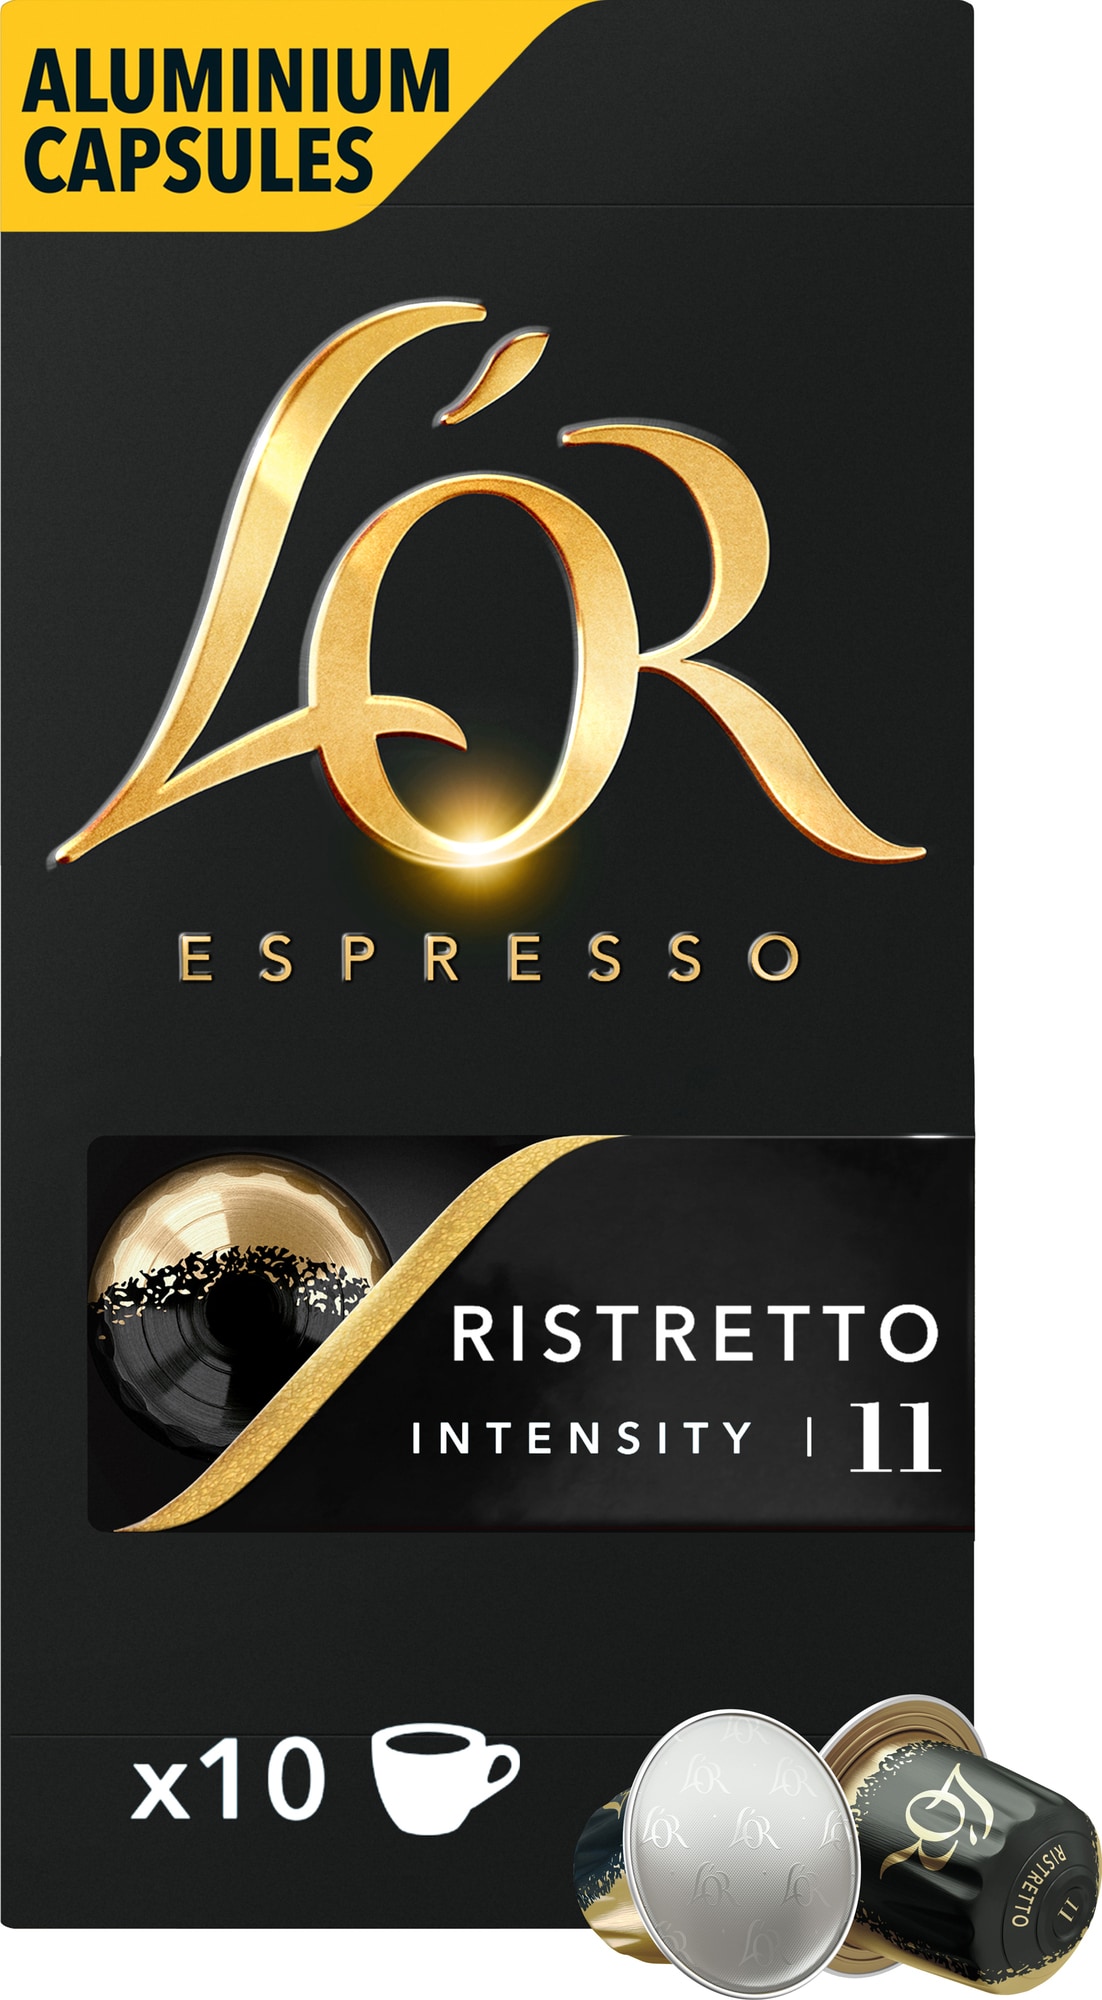 L´OR Espresso 11 Ristretto kaffekapsler thumbnail